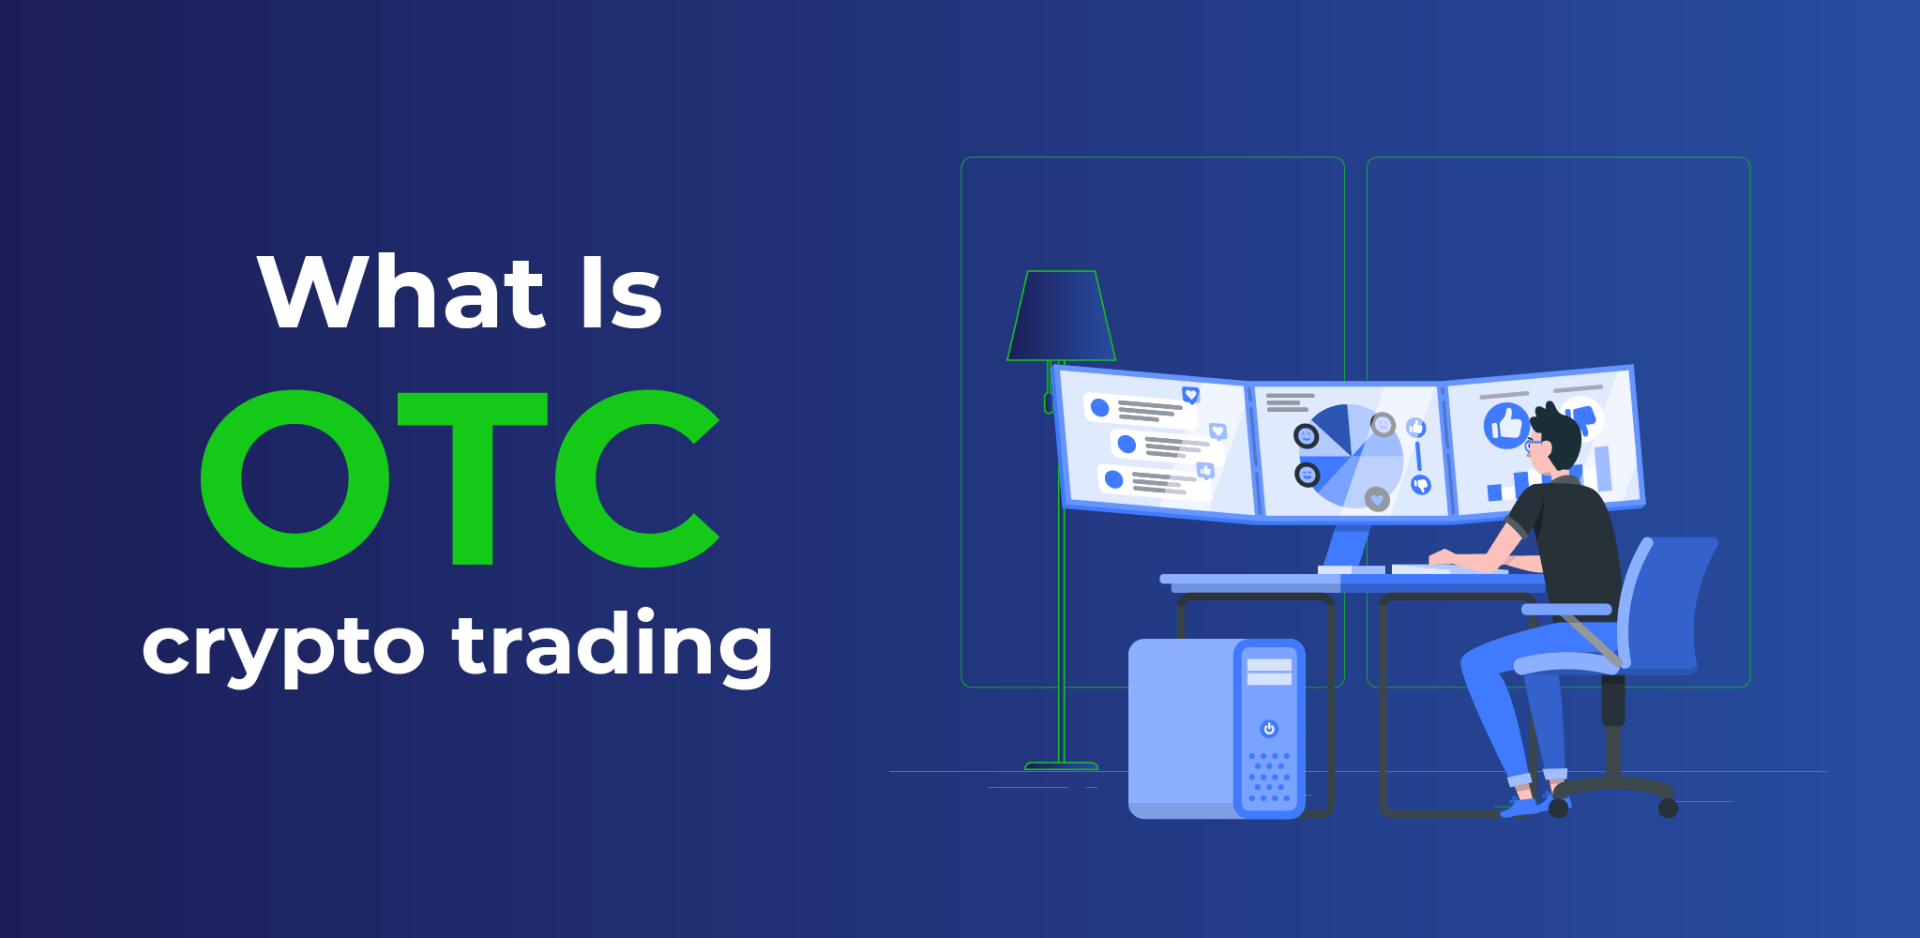 OTC Crypto Trading Explained